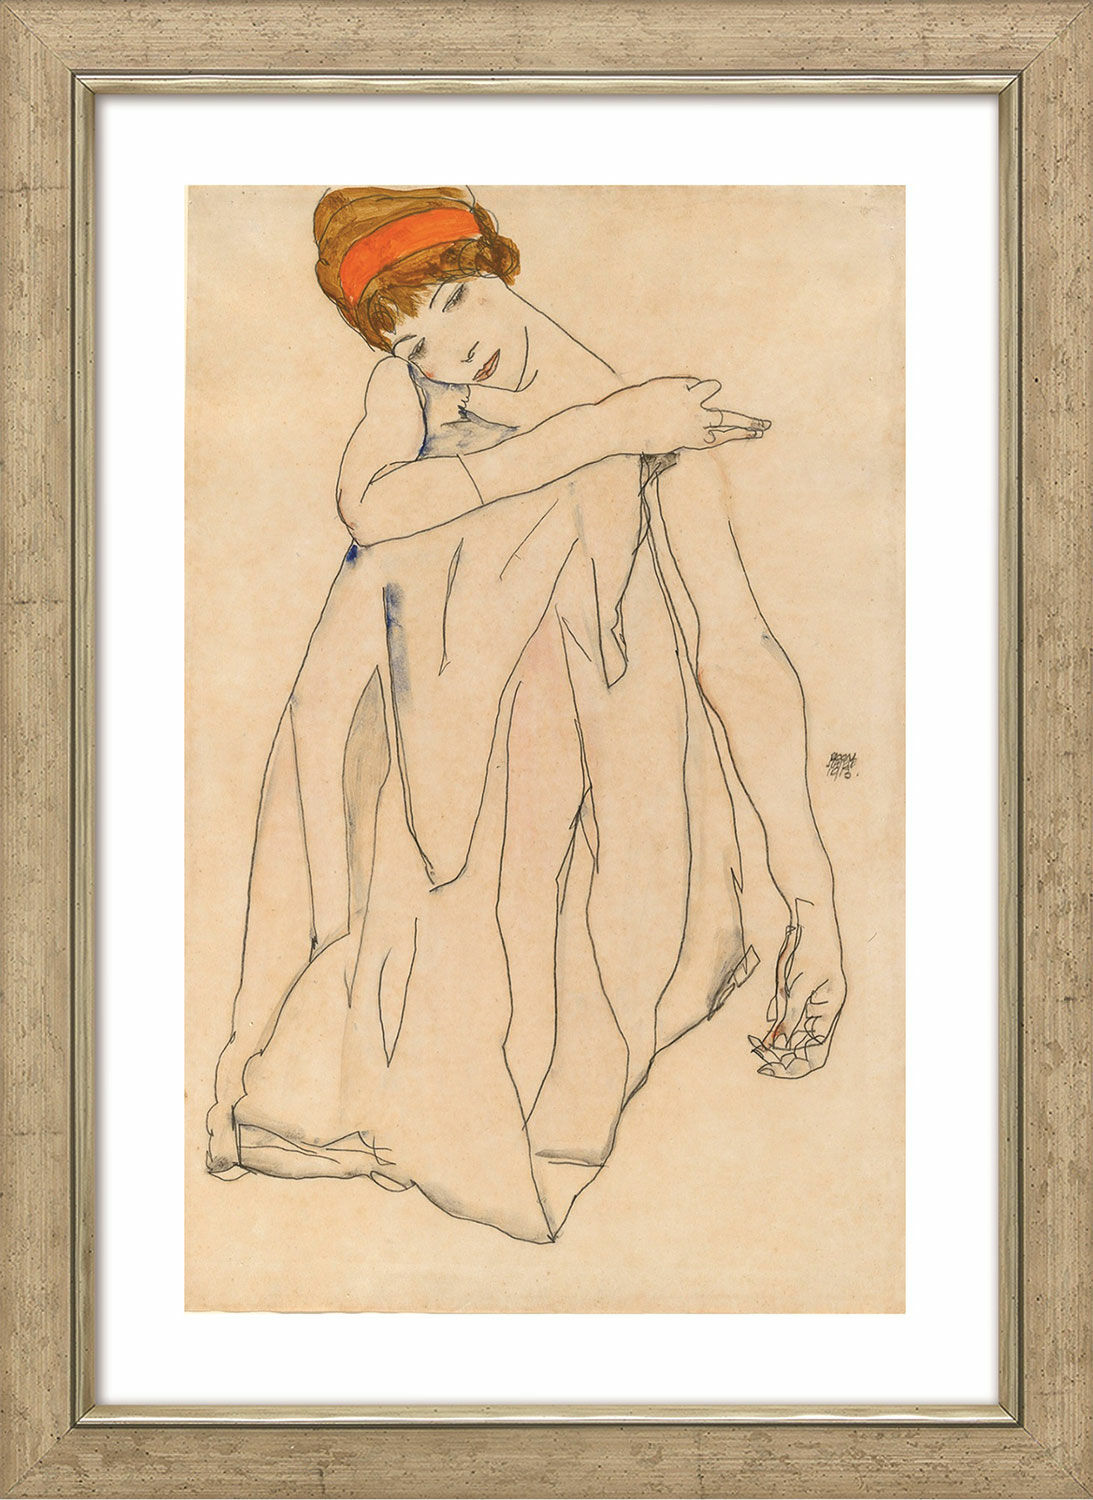 Billede "Danseren" (1913), indrammet von Egon Schiele